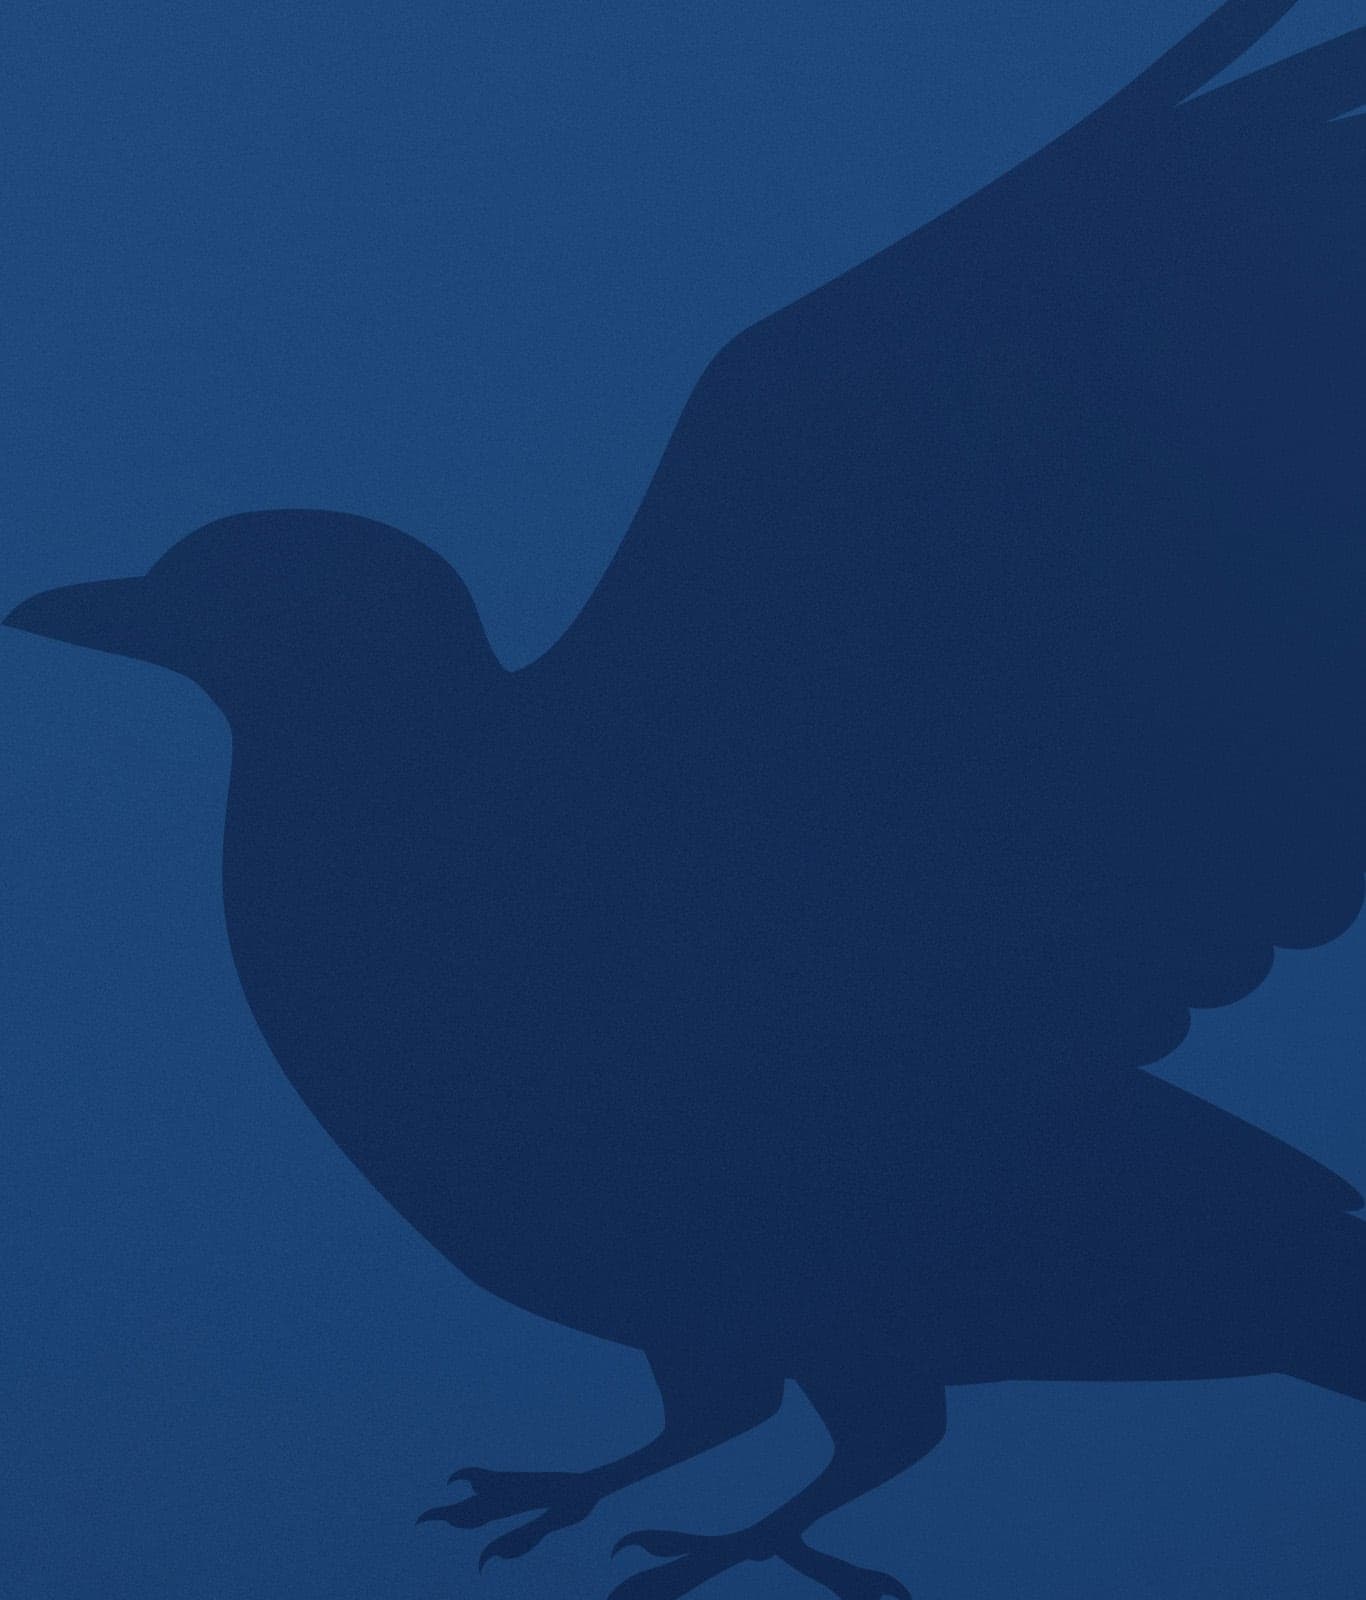 Il corvo di Corvonero su uno sfondo blu.